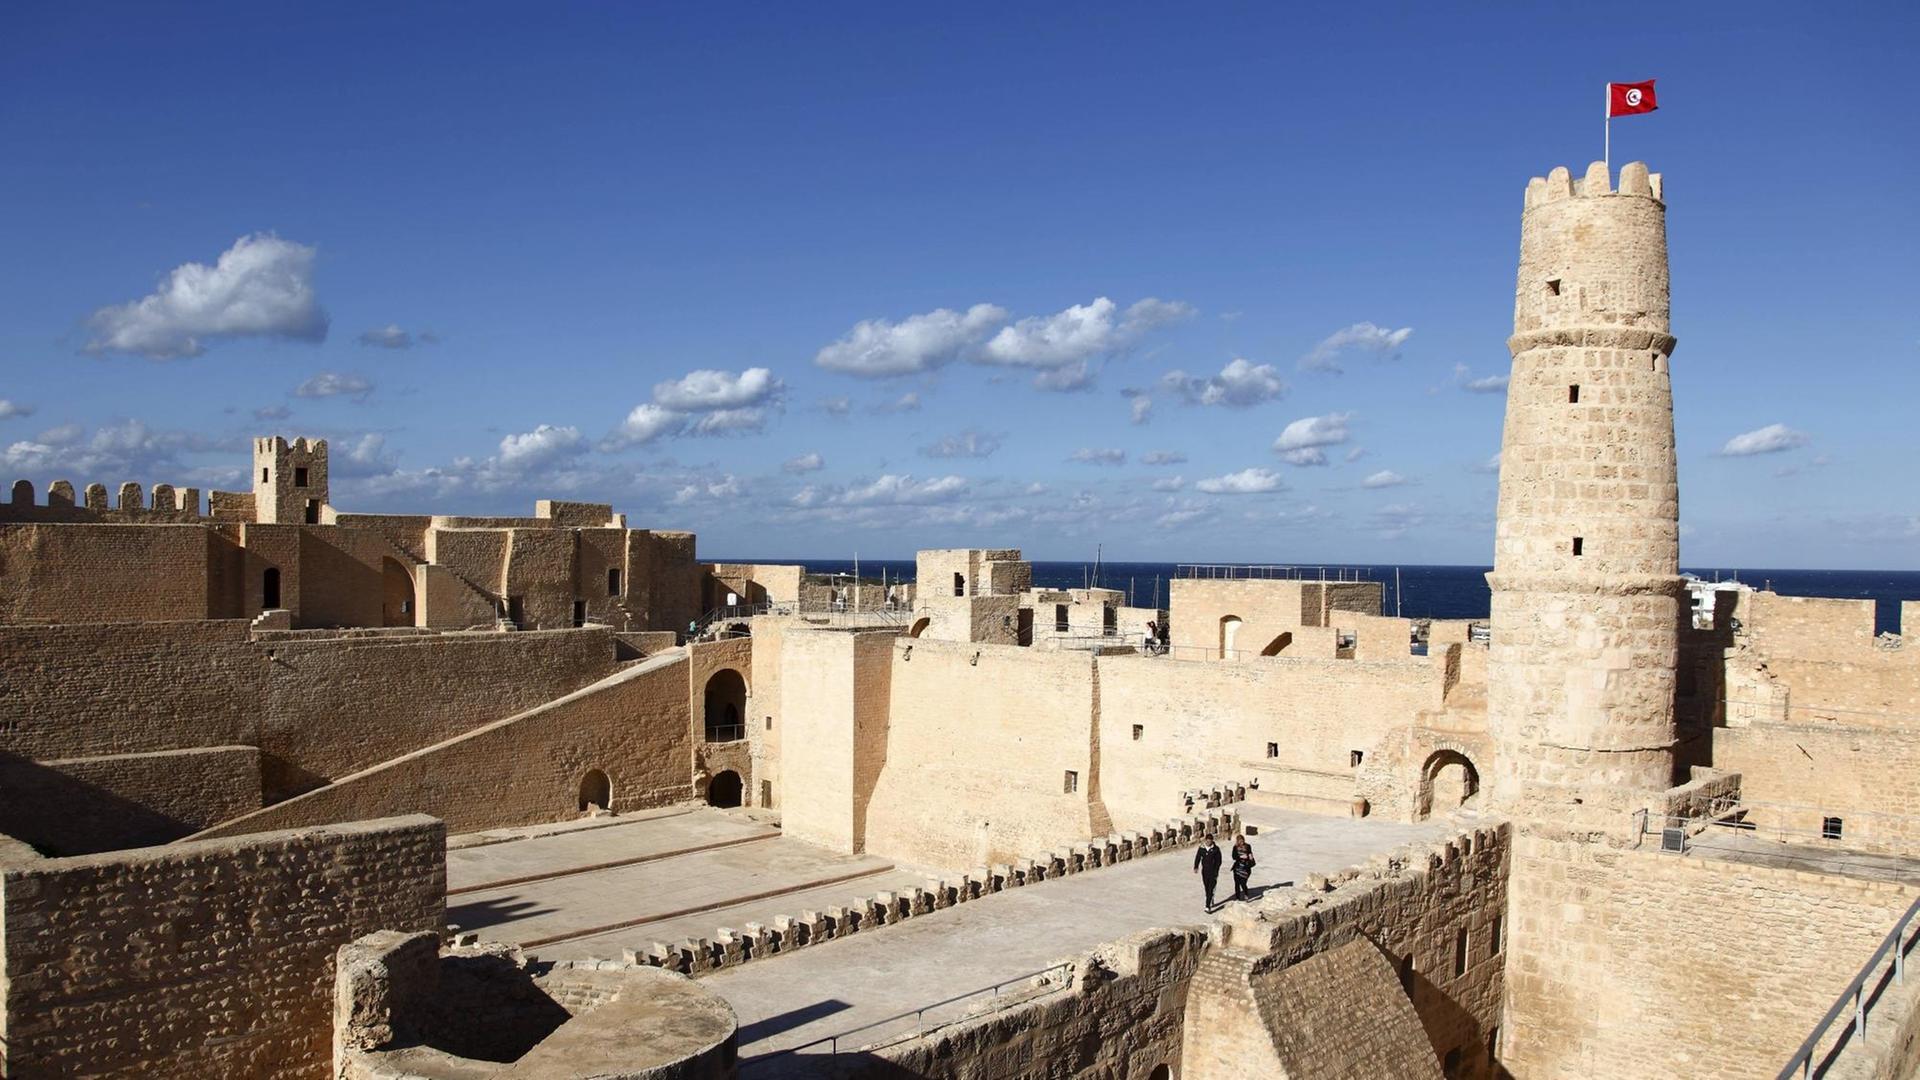 Ribat, die alte Festung von Monastir, an der Mittelmeerküste von Tunesien